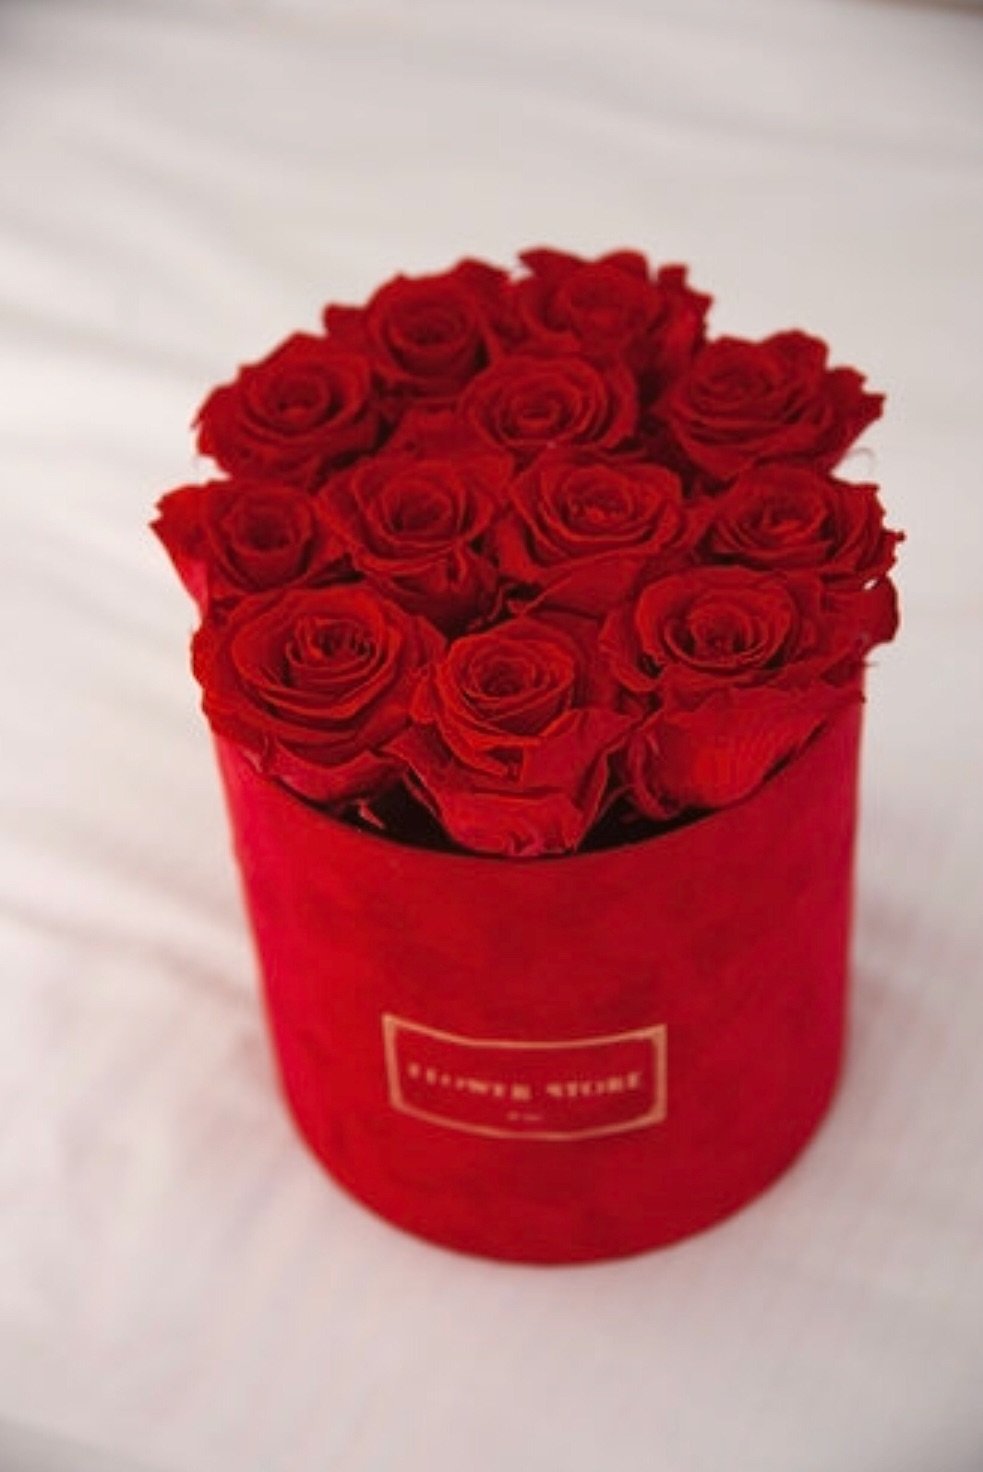 Красные розы в красной флокированной коробке - живые цветы.